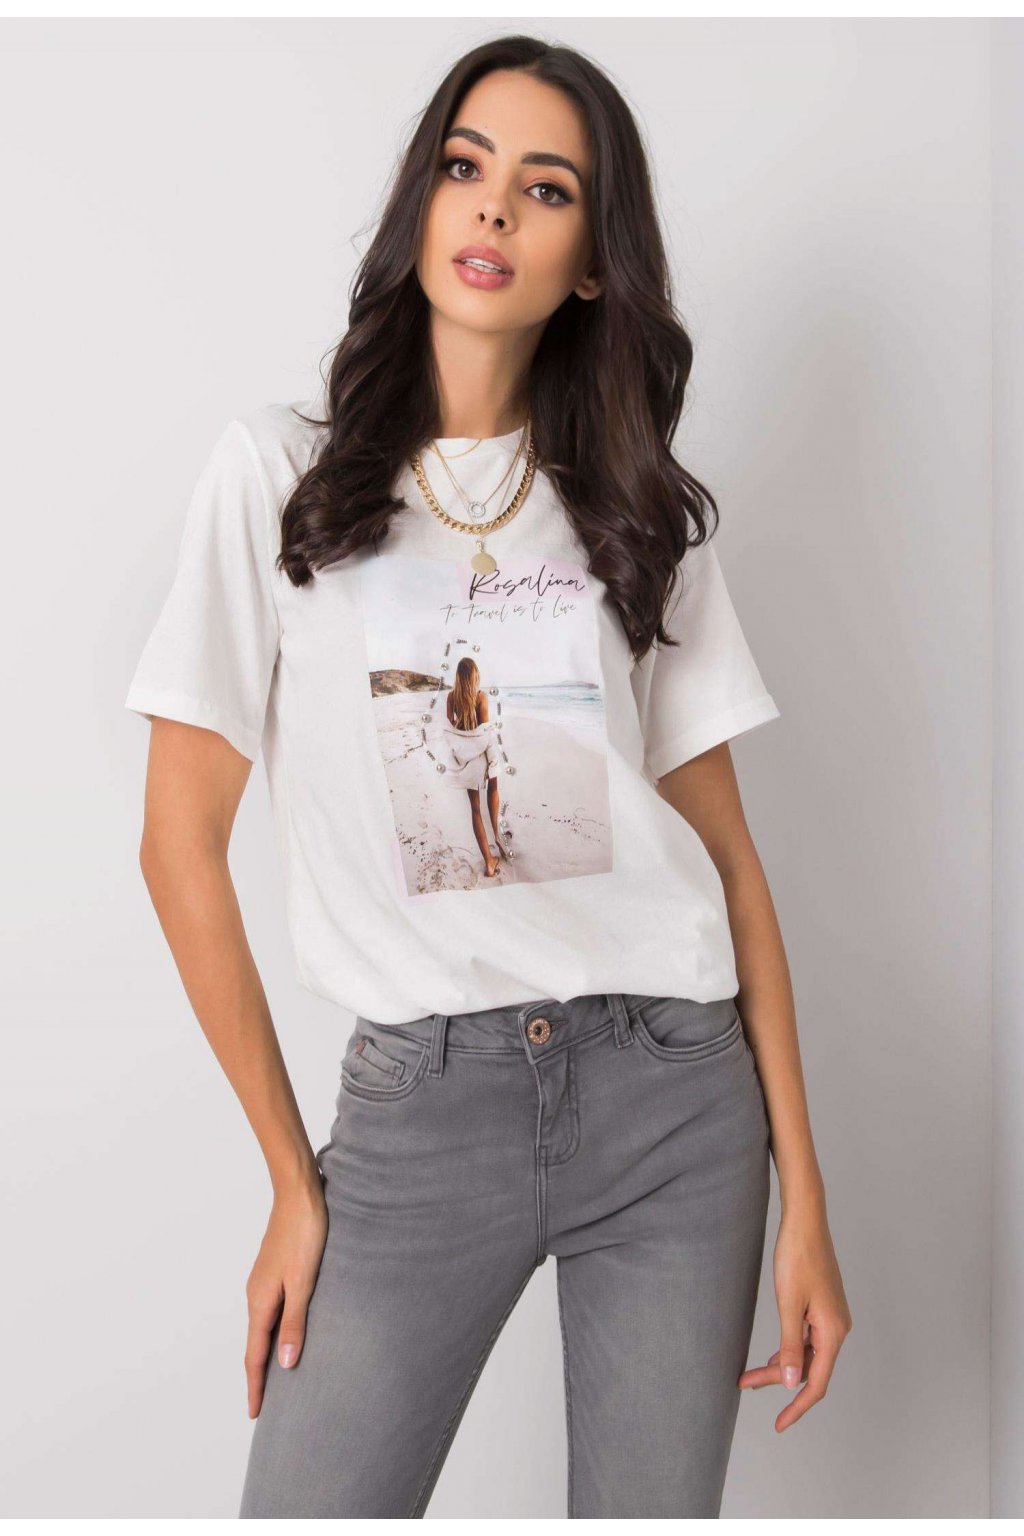 Bílé dámské tričko s potiskem | FASHIONSUGAR e-shop